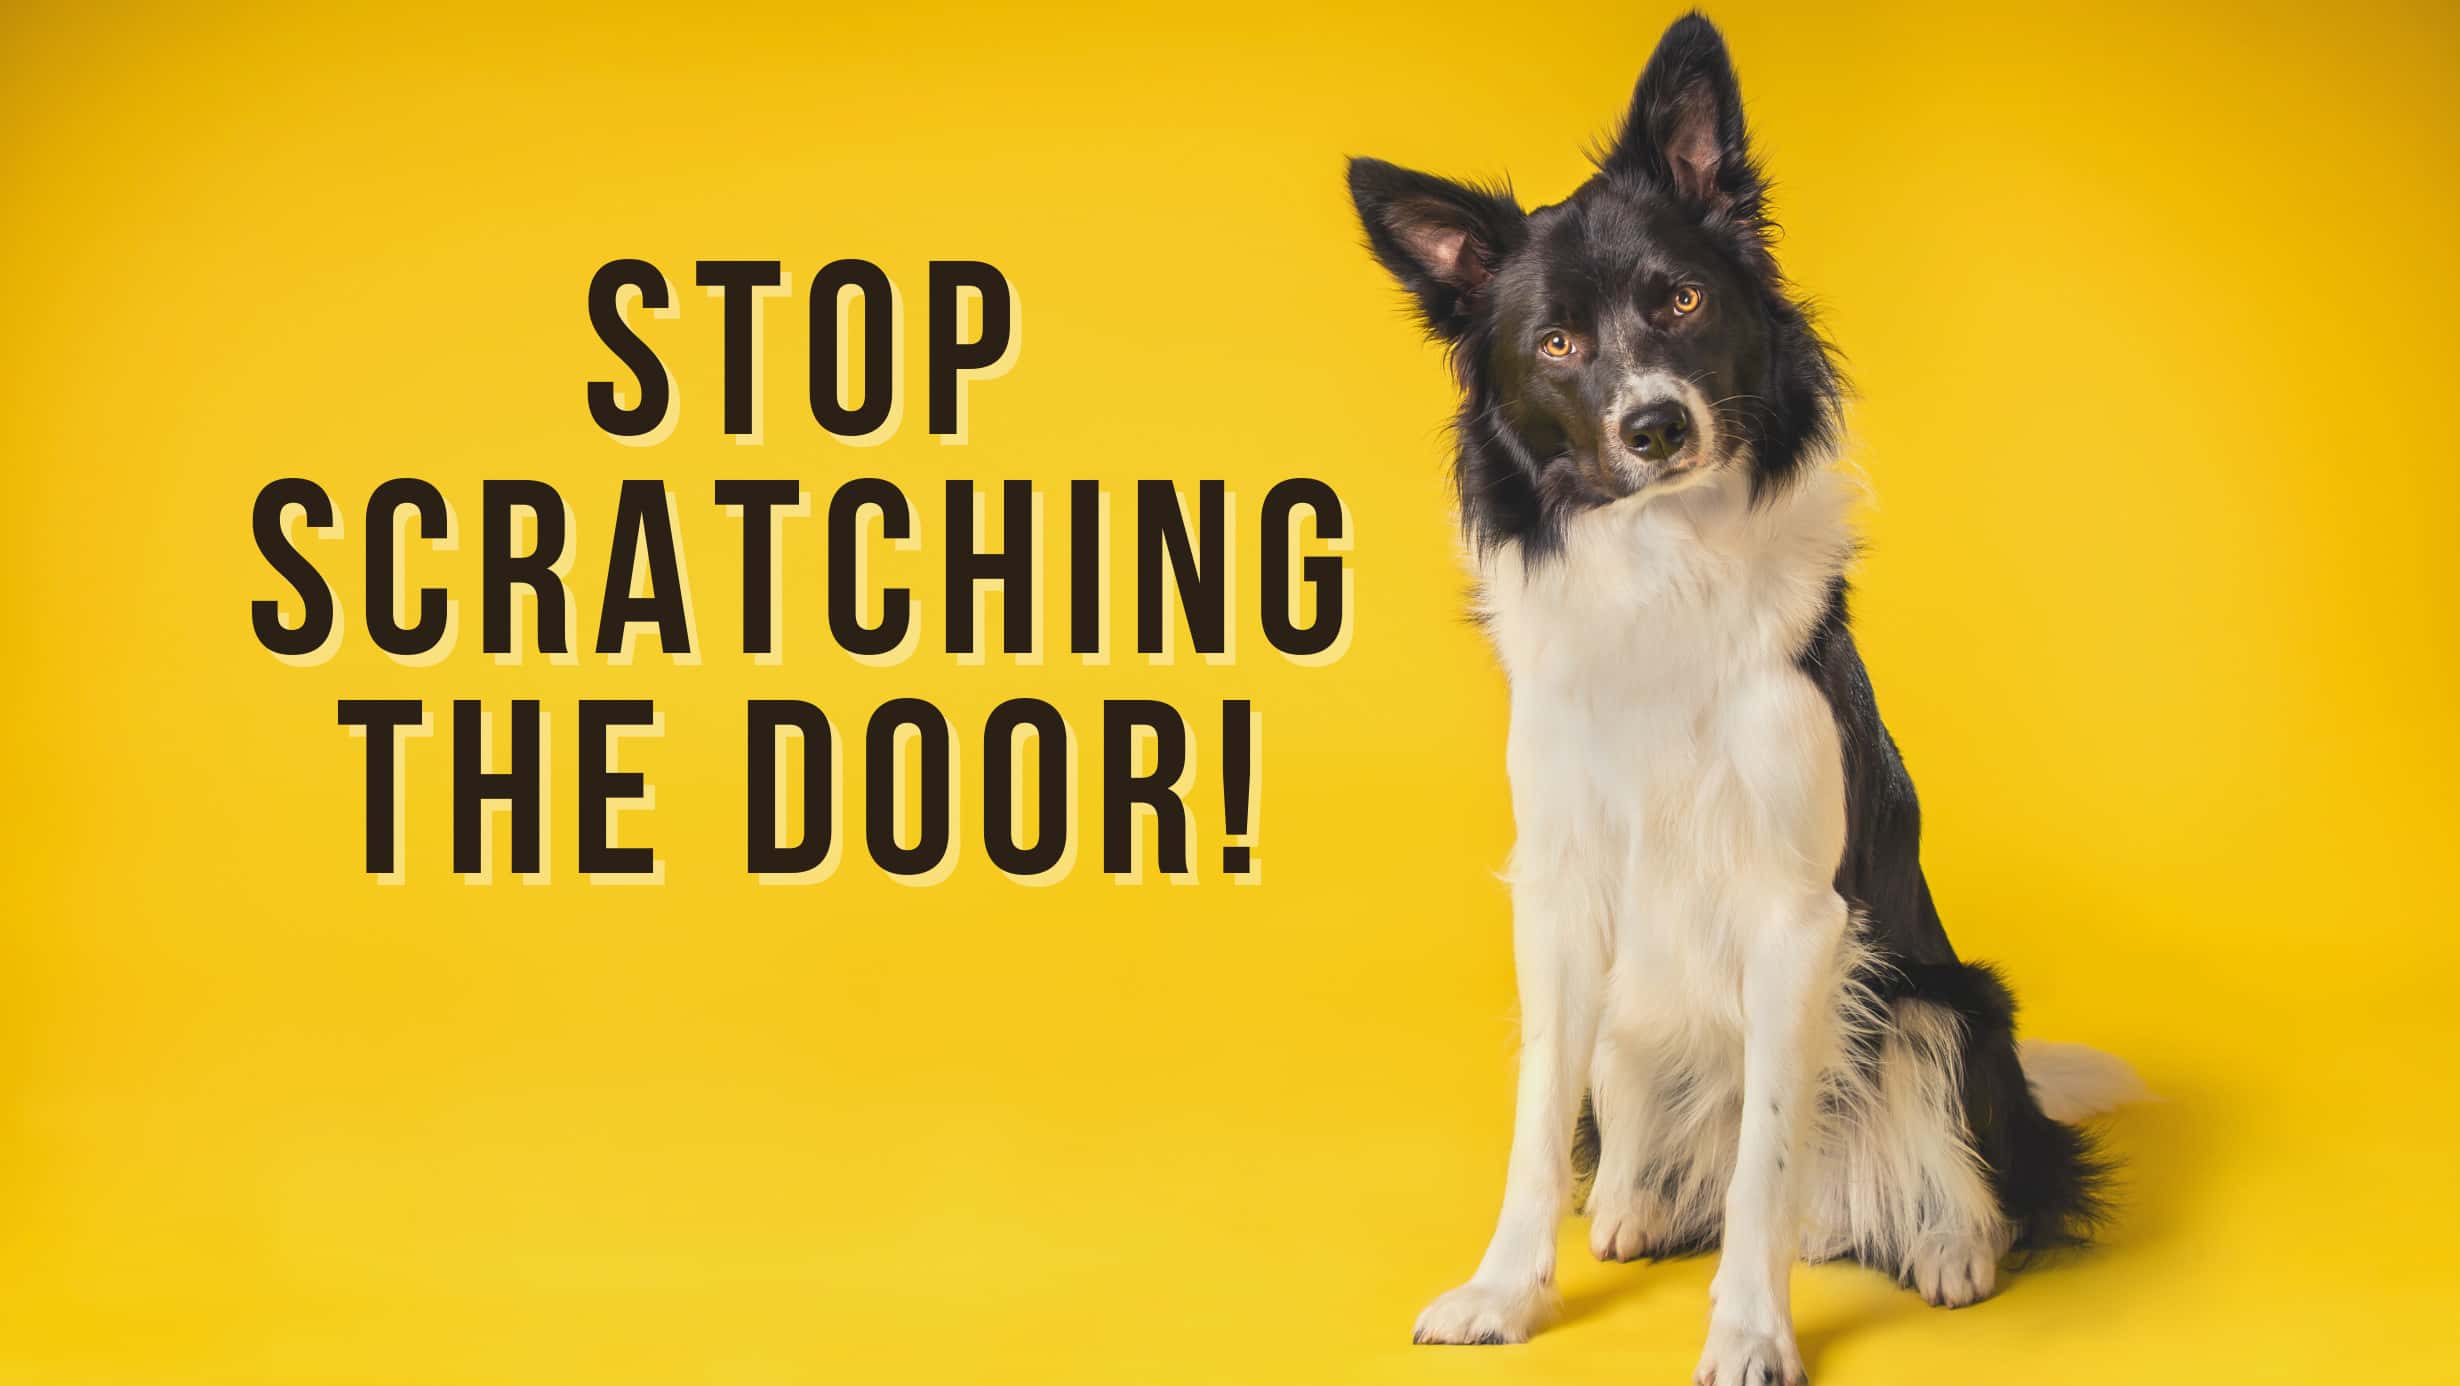 Scratching the door dog